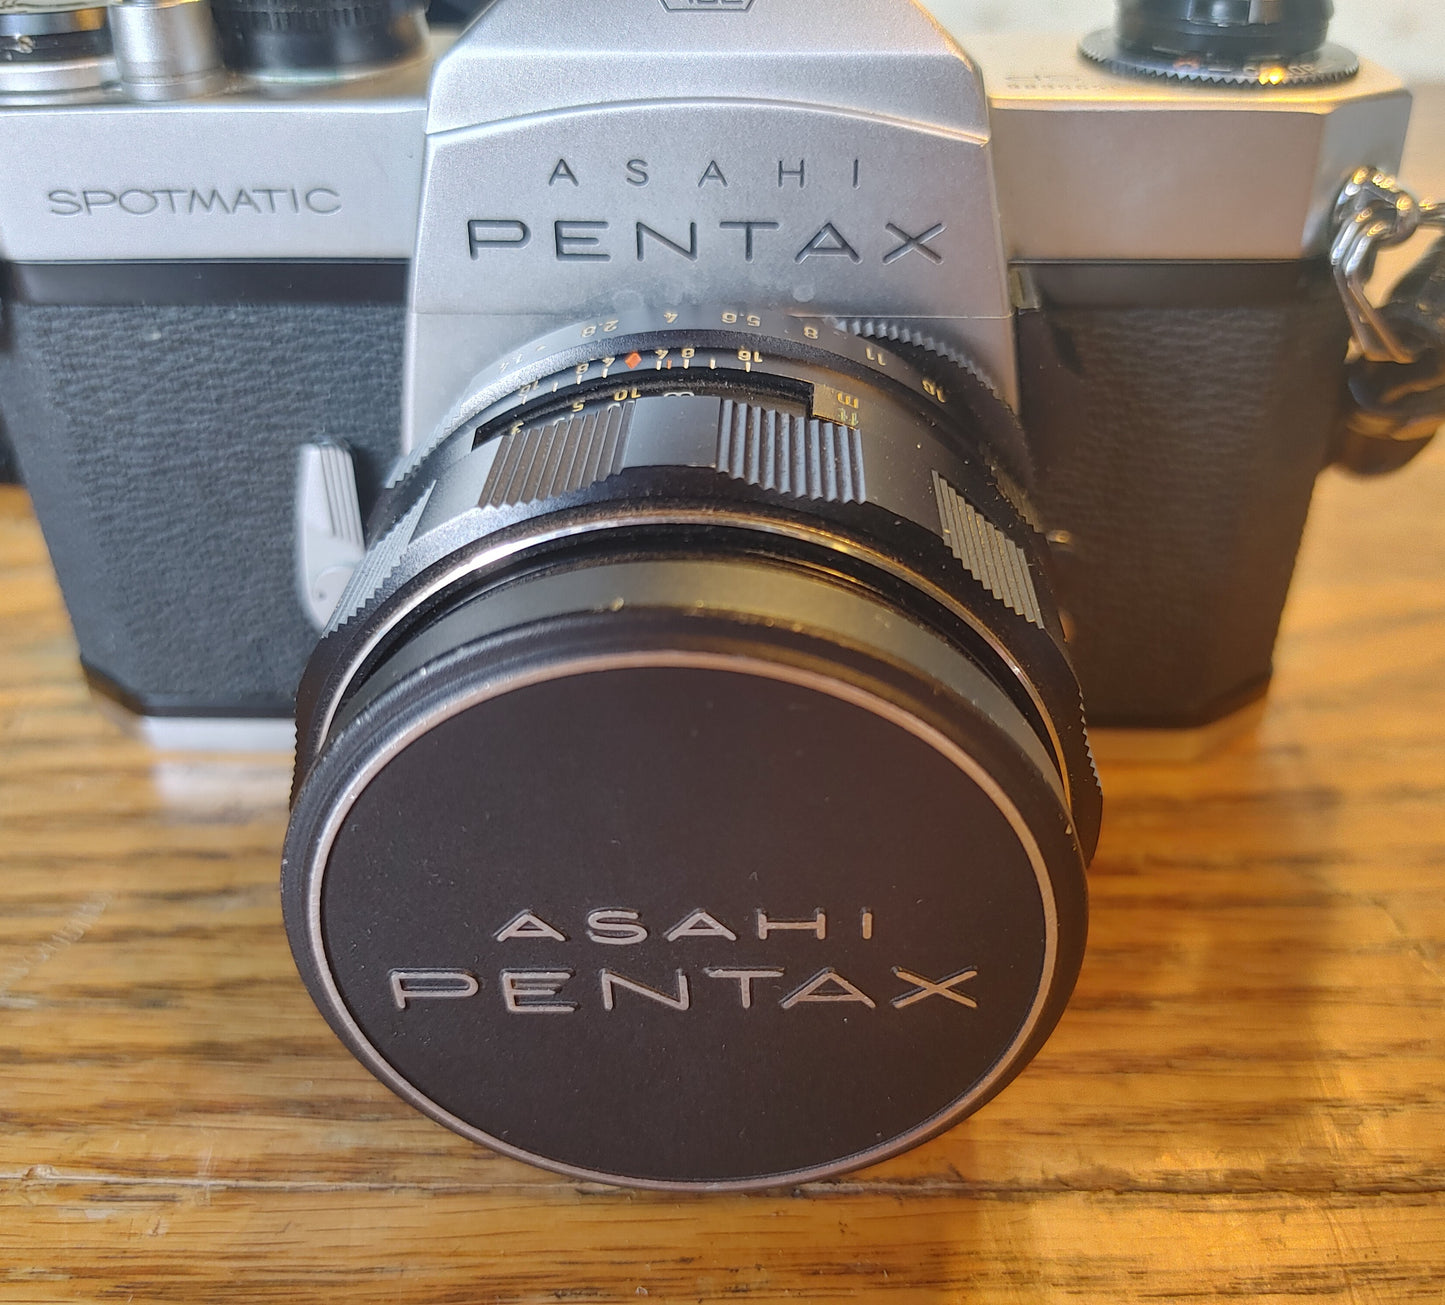 Asahi (NOT Beer)! Vintage Pentax Spotmatic 35mm Camera 1:1.4/50mm Lens Takumar Case